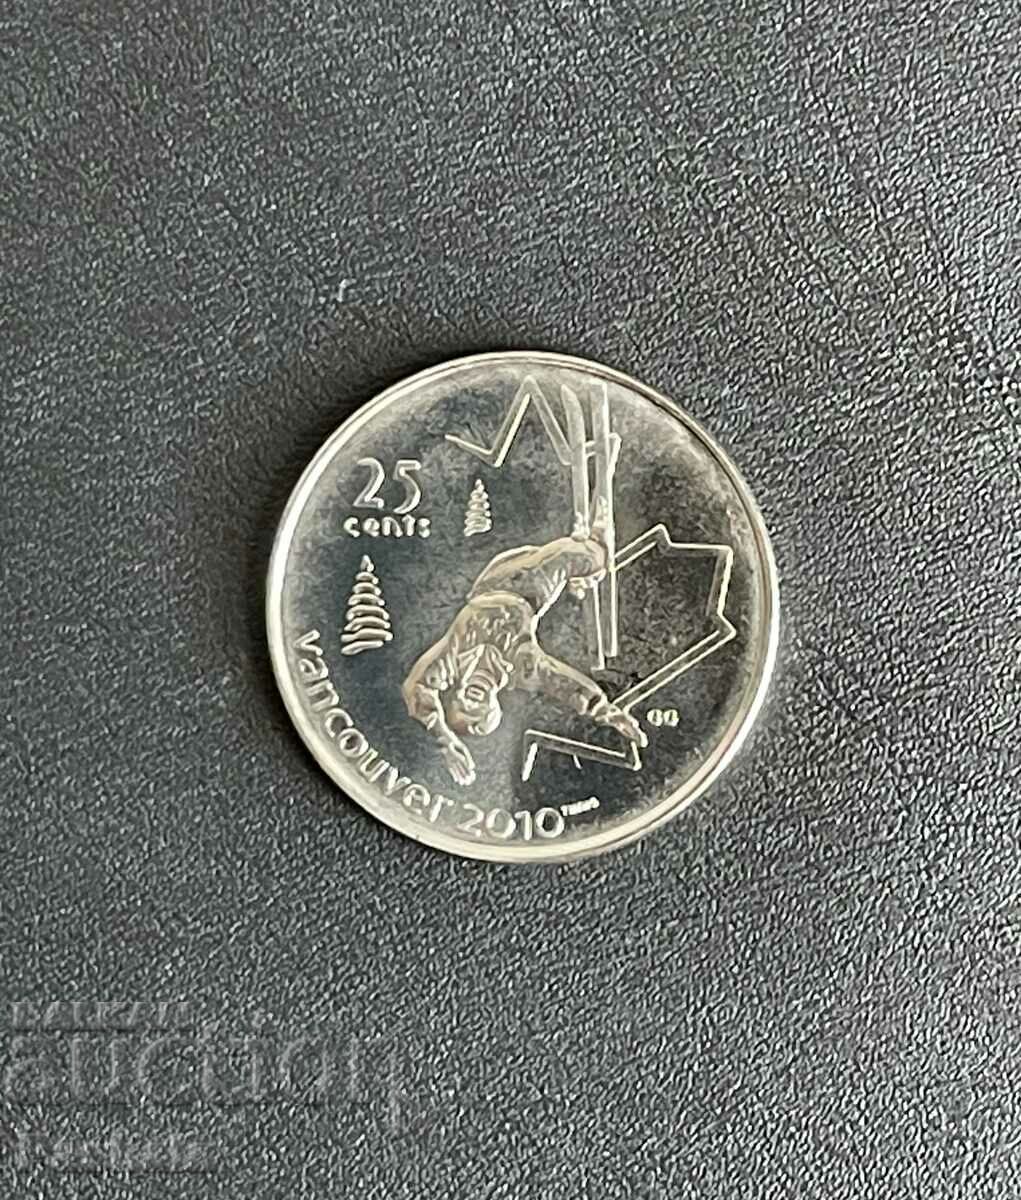 Canada 25 cent 2008